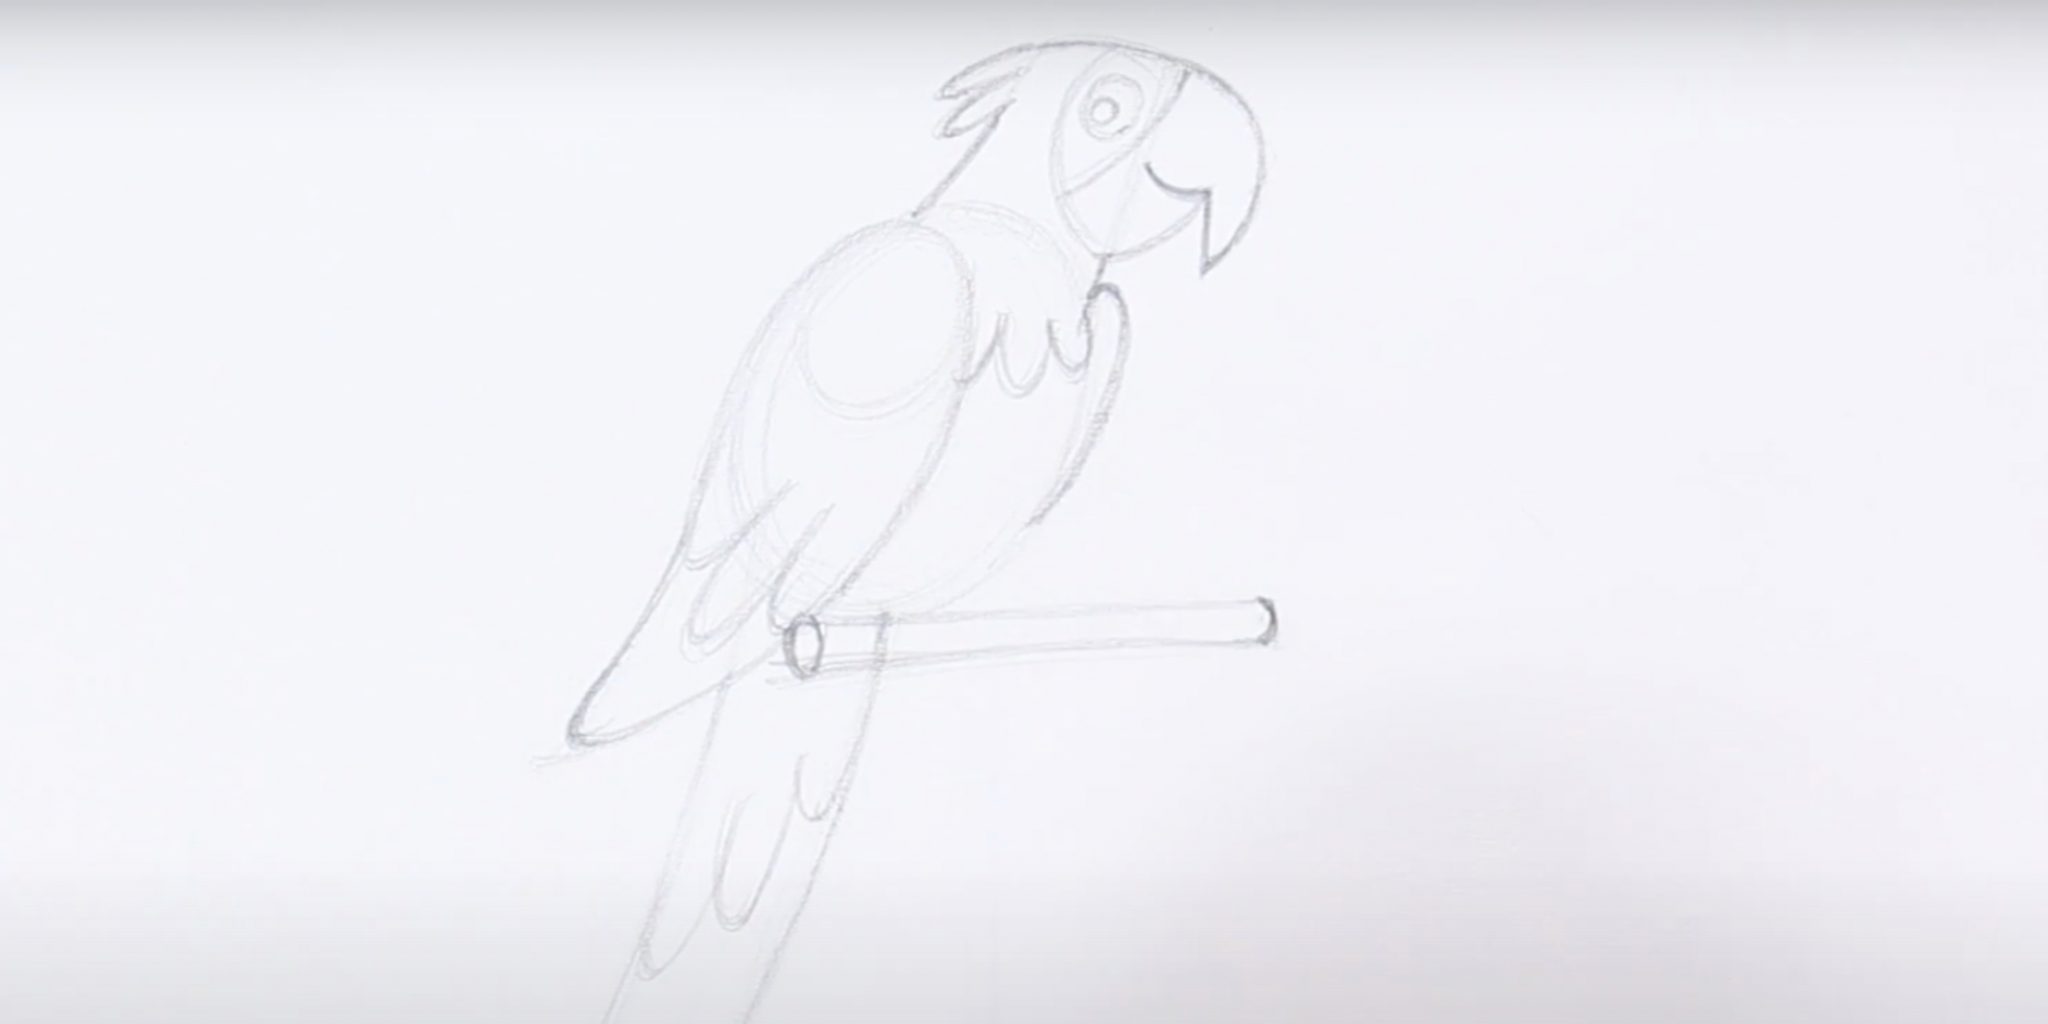 Поэтапное рисование попугая для детей